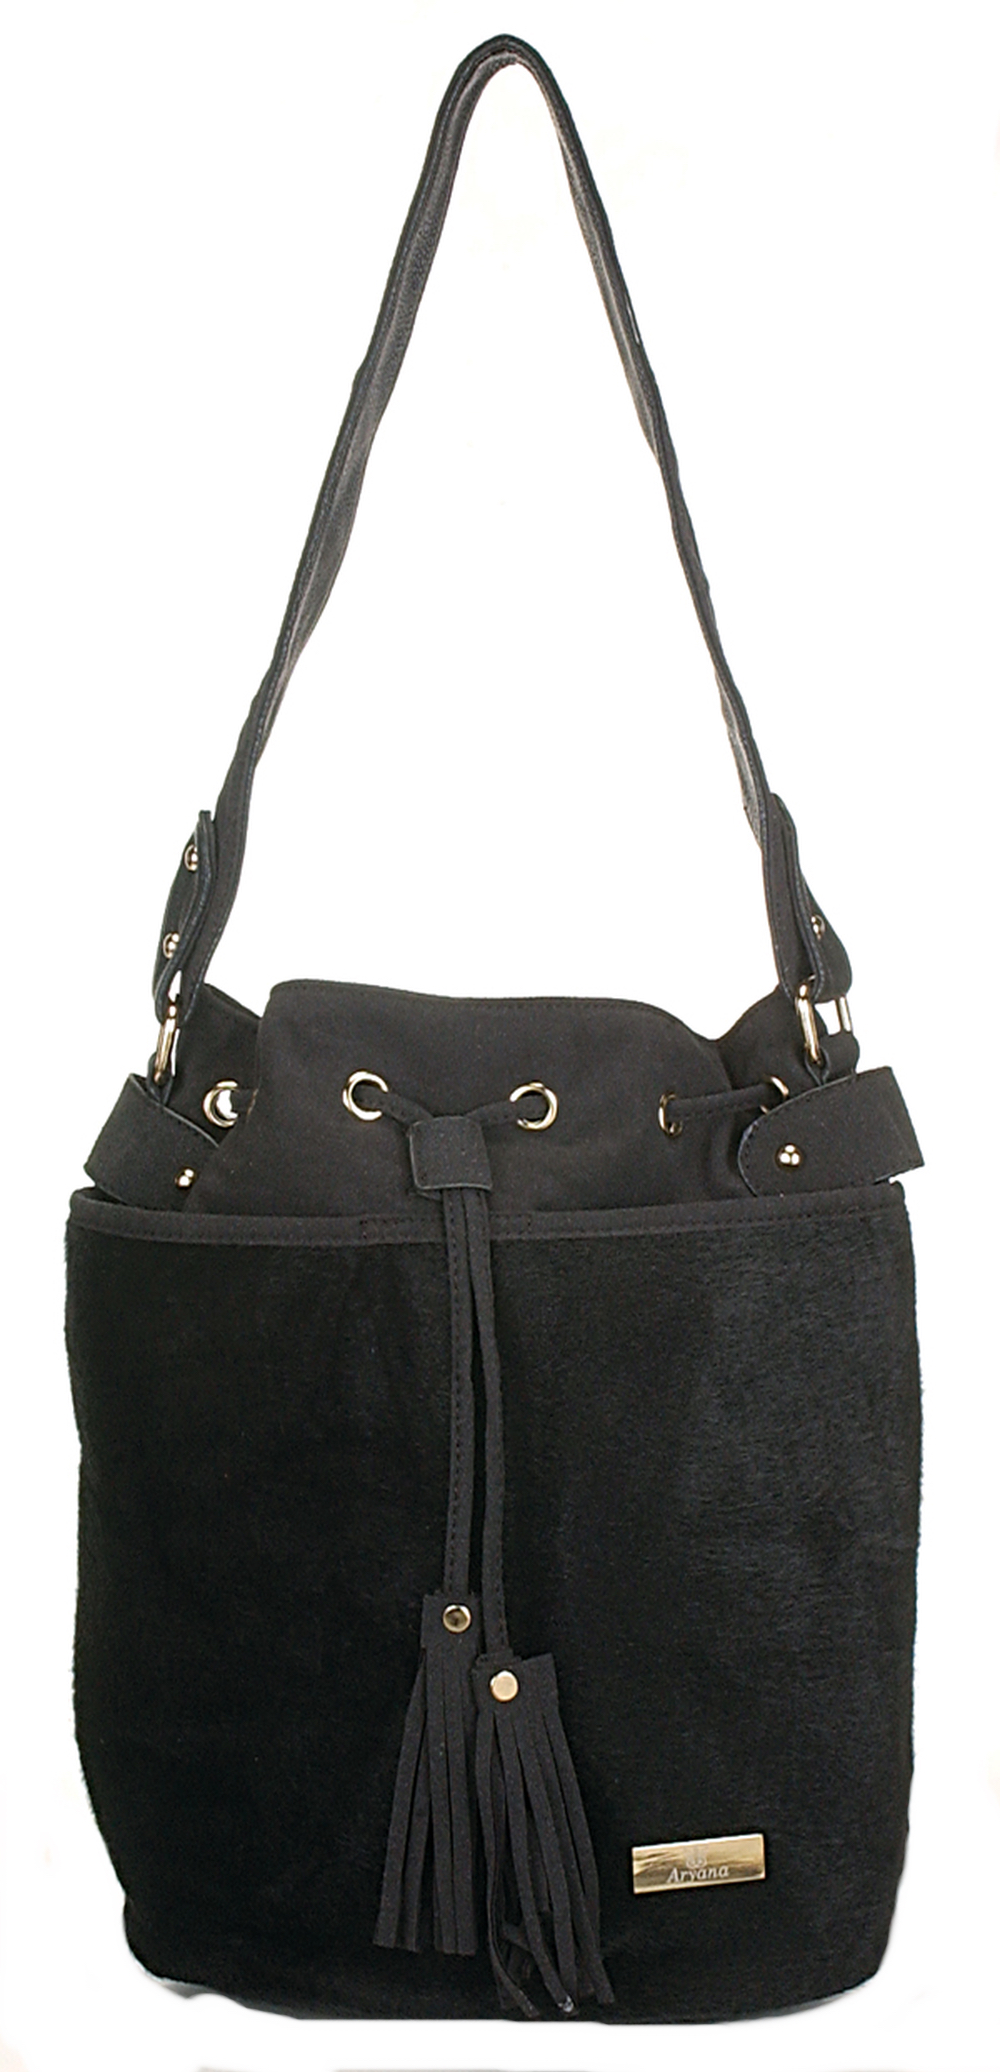 Picture of Aryana Adi-12-Bk Chic Black Drawstring Bucket Style Zip Closure Womens Handbag